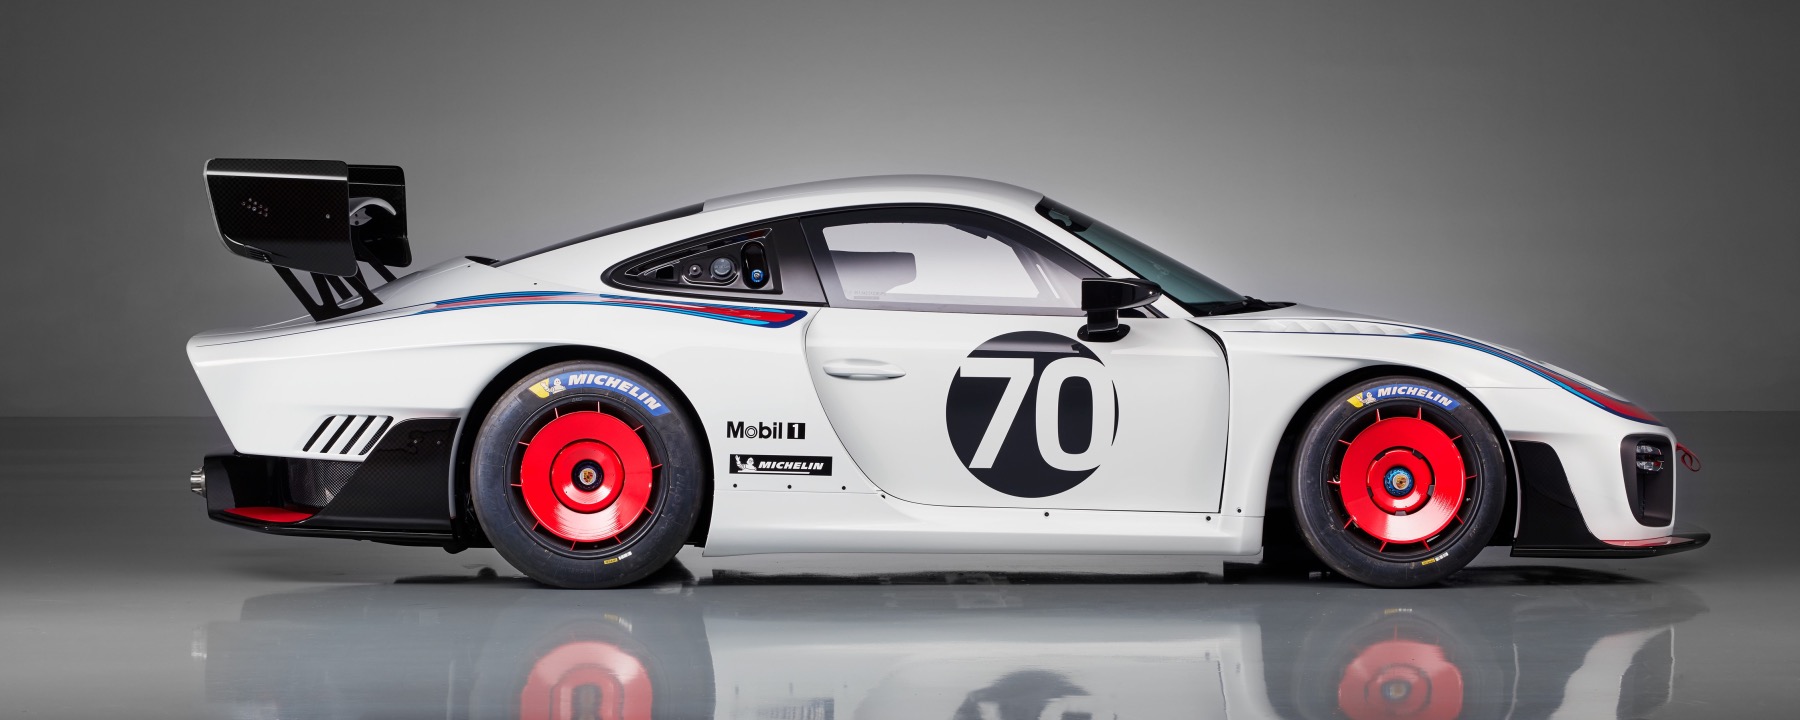 Porsche 6